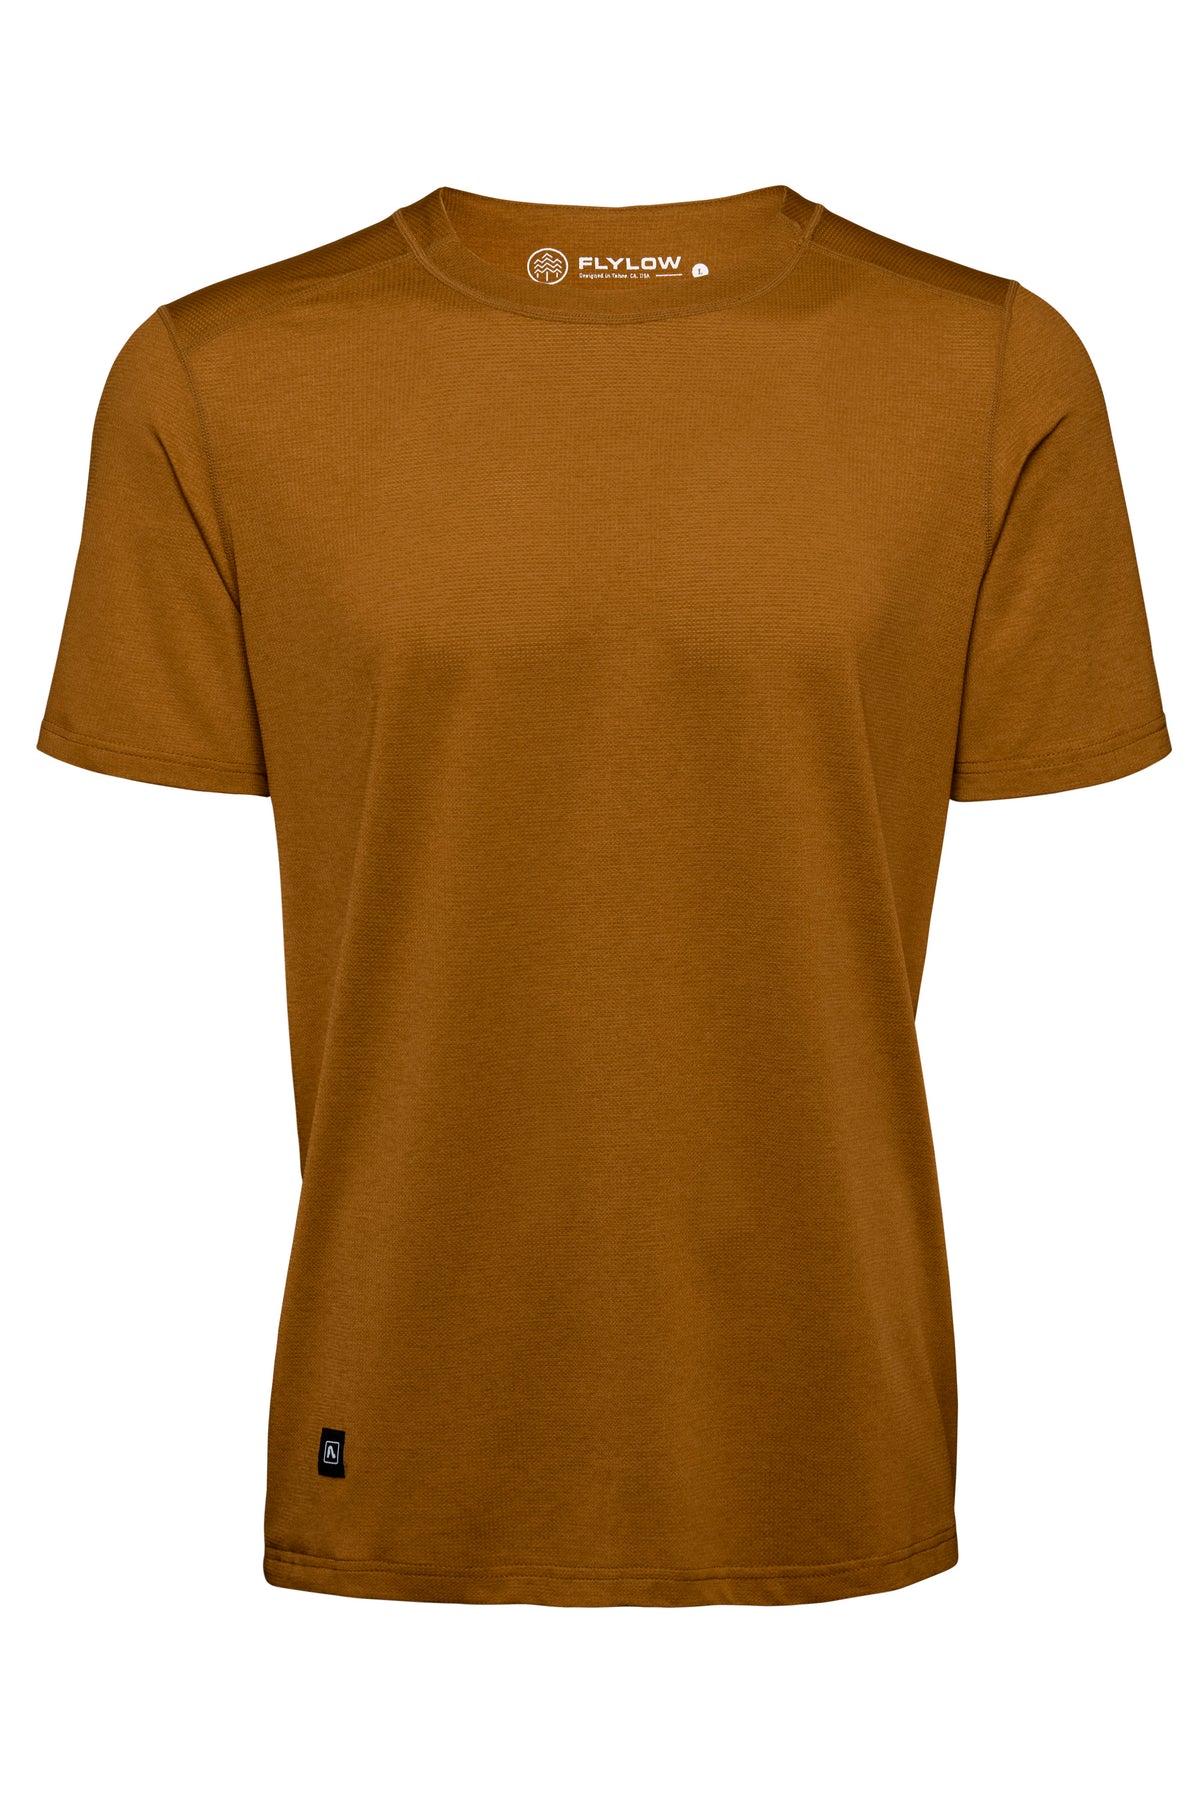 Flylow Men's Garrett Shirt in Slate Copper 